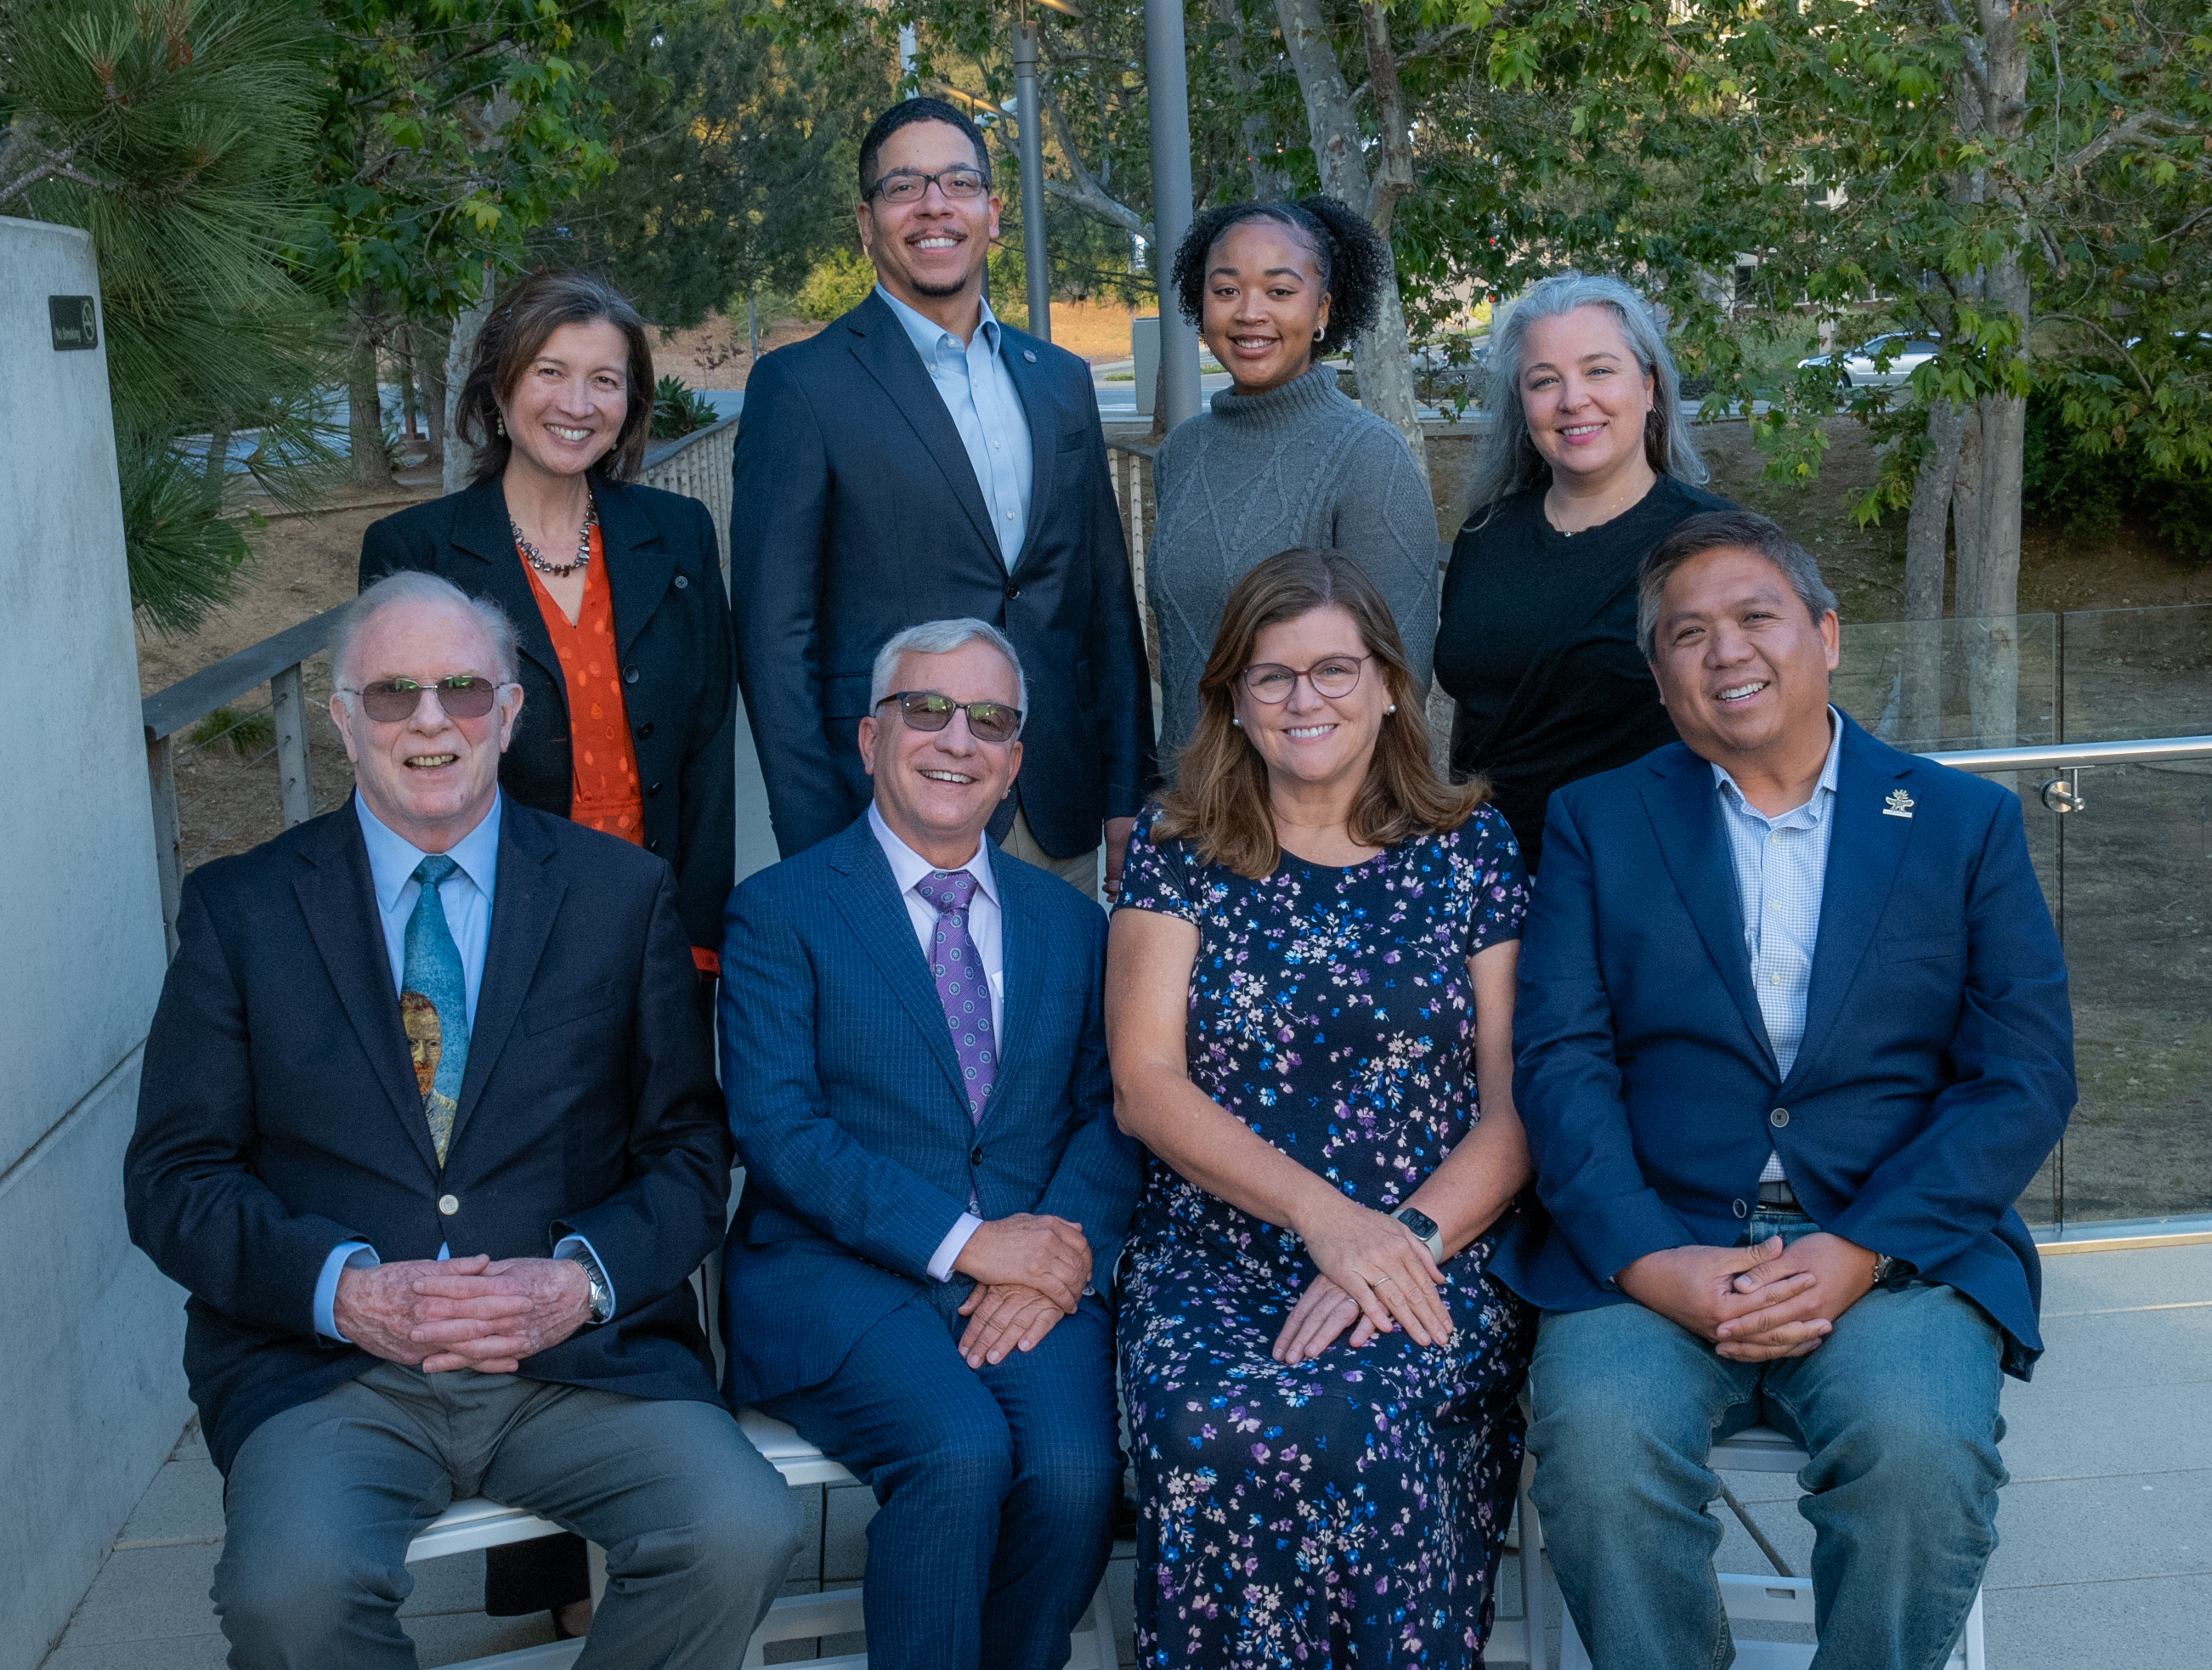 Group photo of Chancellor's Associates council